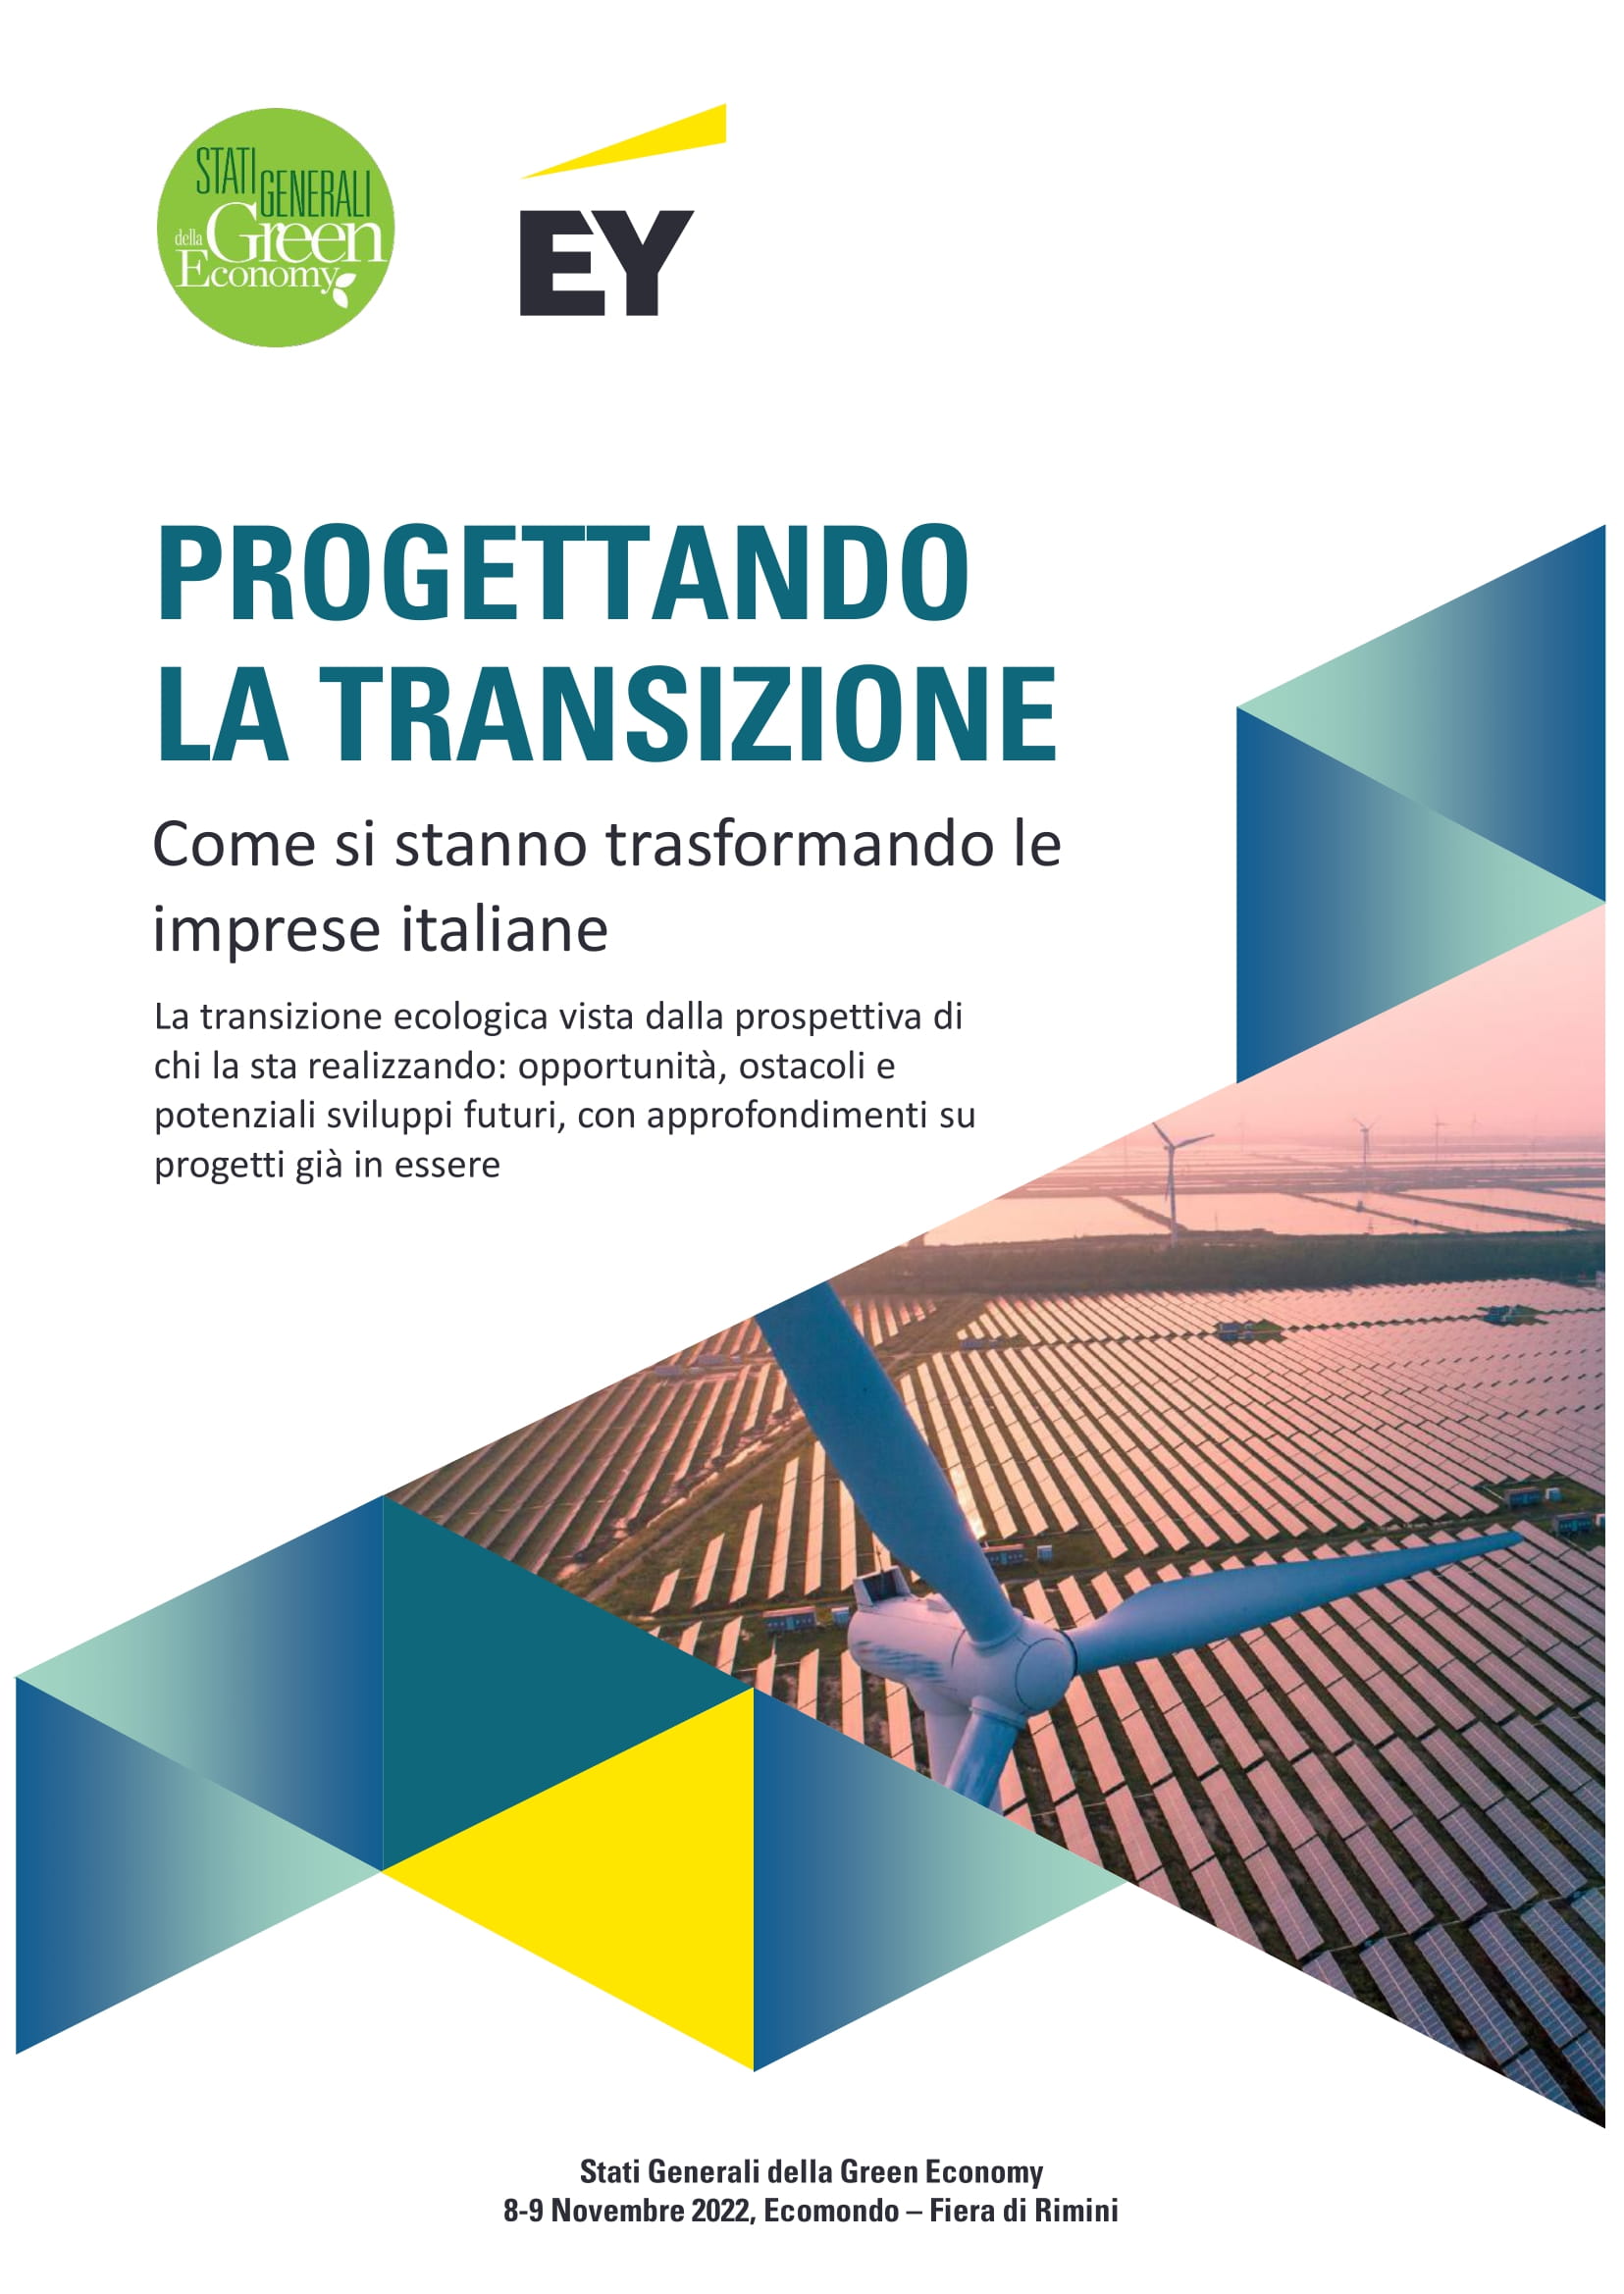 Imprese italiane e transizione ecologica: per 8 su 10 è necessaria per superare crisi economica ed ecologica